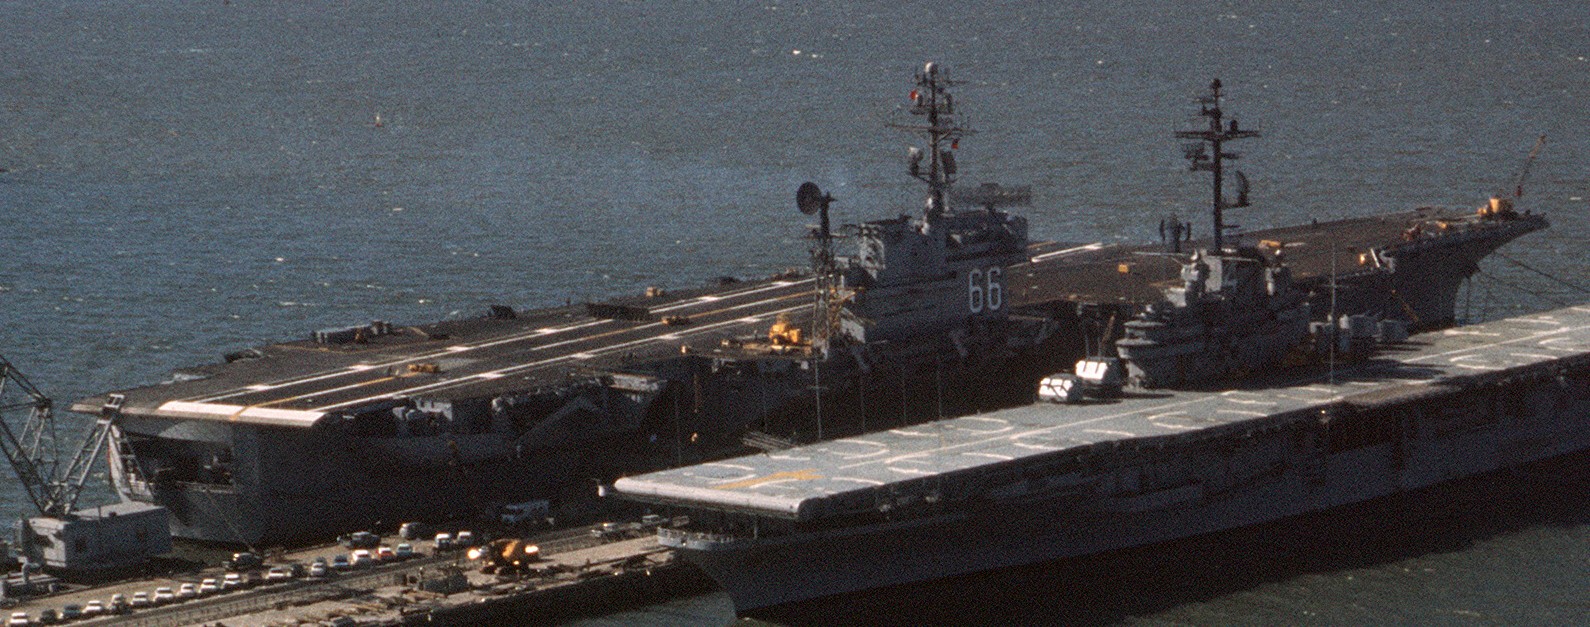 cv-66 uss america kitty hawk class aircraft carrier us navy norfolk 1969 11